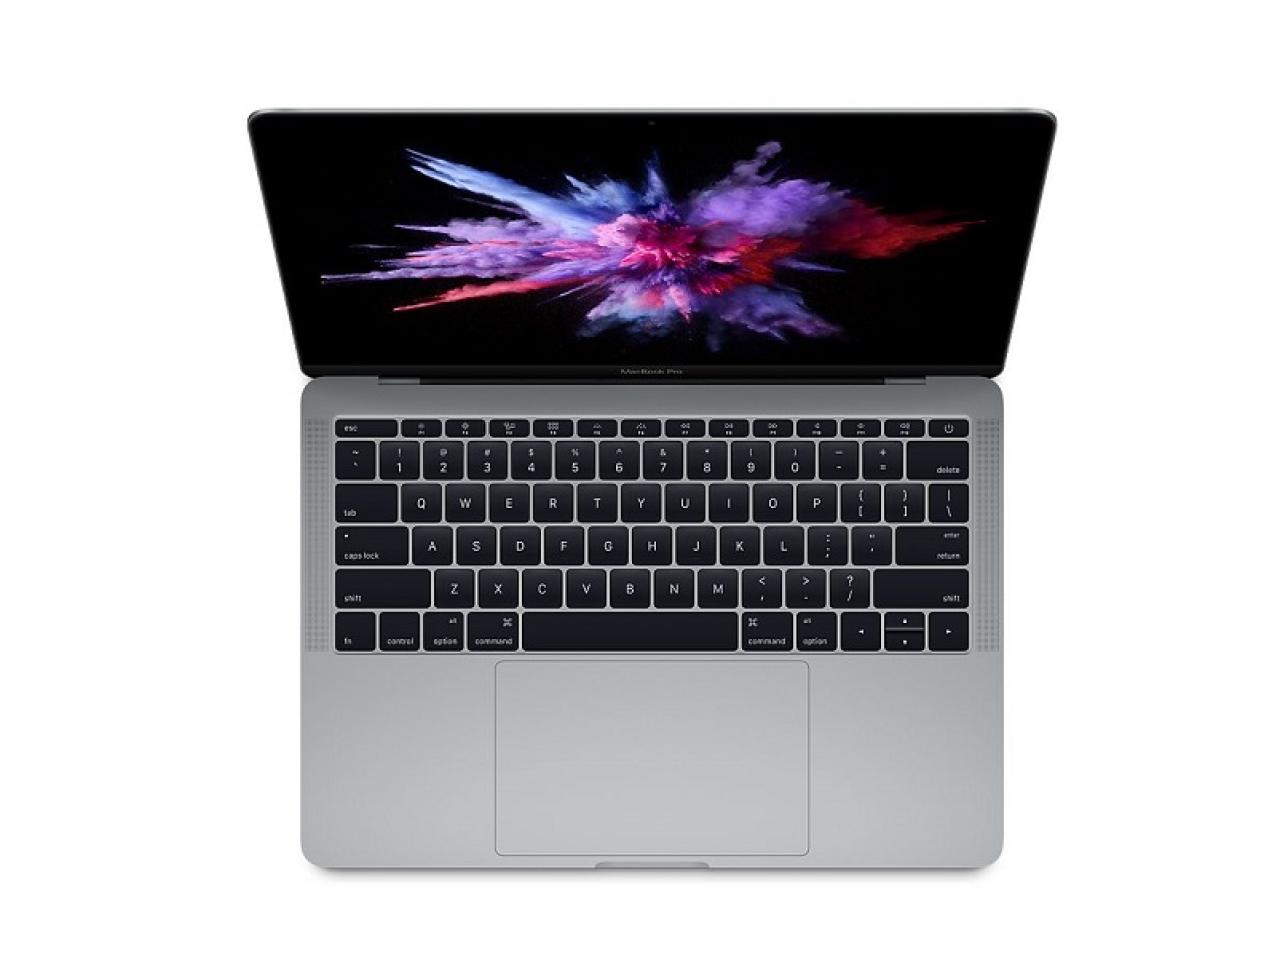 Apple MacBook Pro (13" 2017, Two Thunderbolt 3 Port)  space gray  - shop.bb-net.de